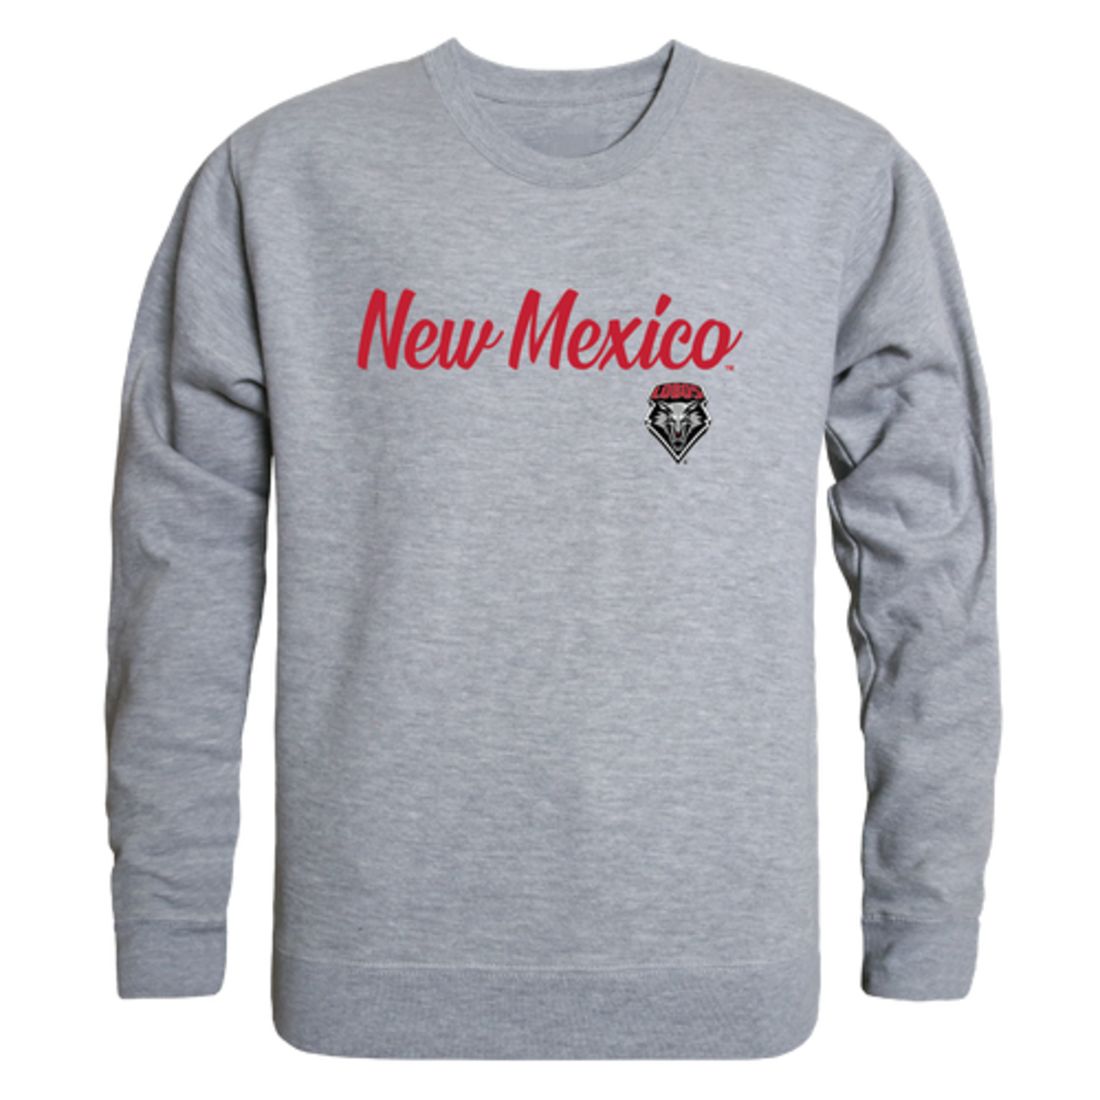 UNM University of New Mexico Lobos Script Crewneck Pullover Sweatshirt Sweater Black-Campus-Wardrobe